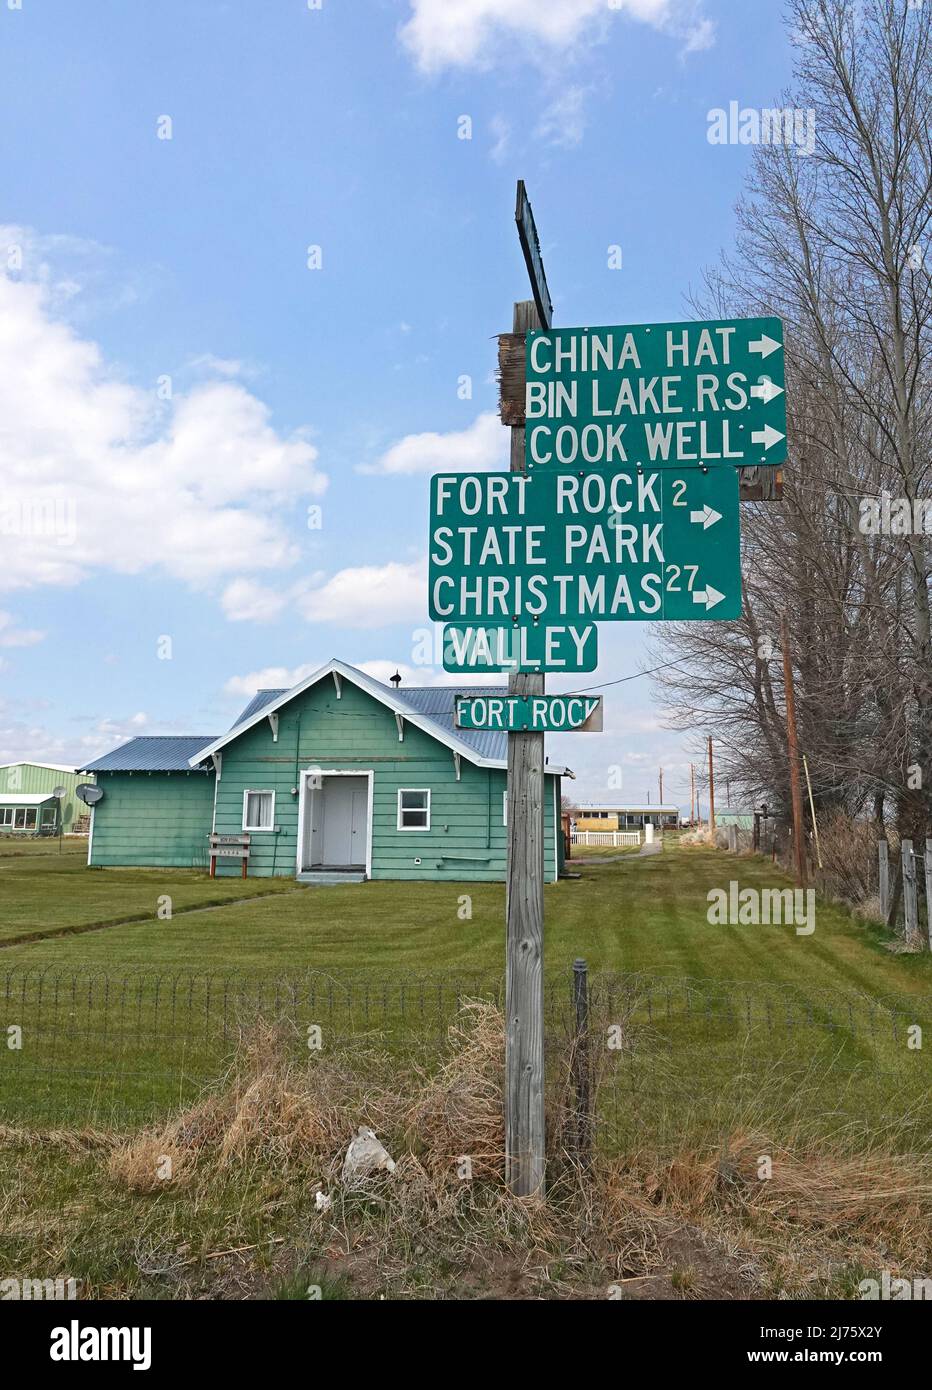 Un panneau routier dans le petit village de fort Rock, Oregon, indiquant la voie vers diverses attractions locales. Banque D'Images